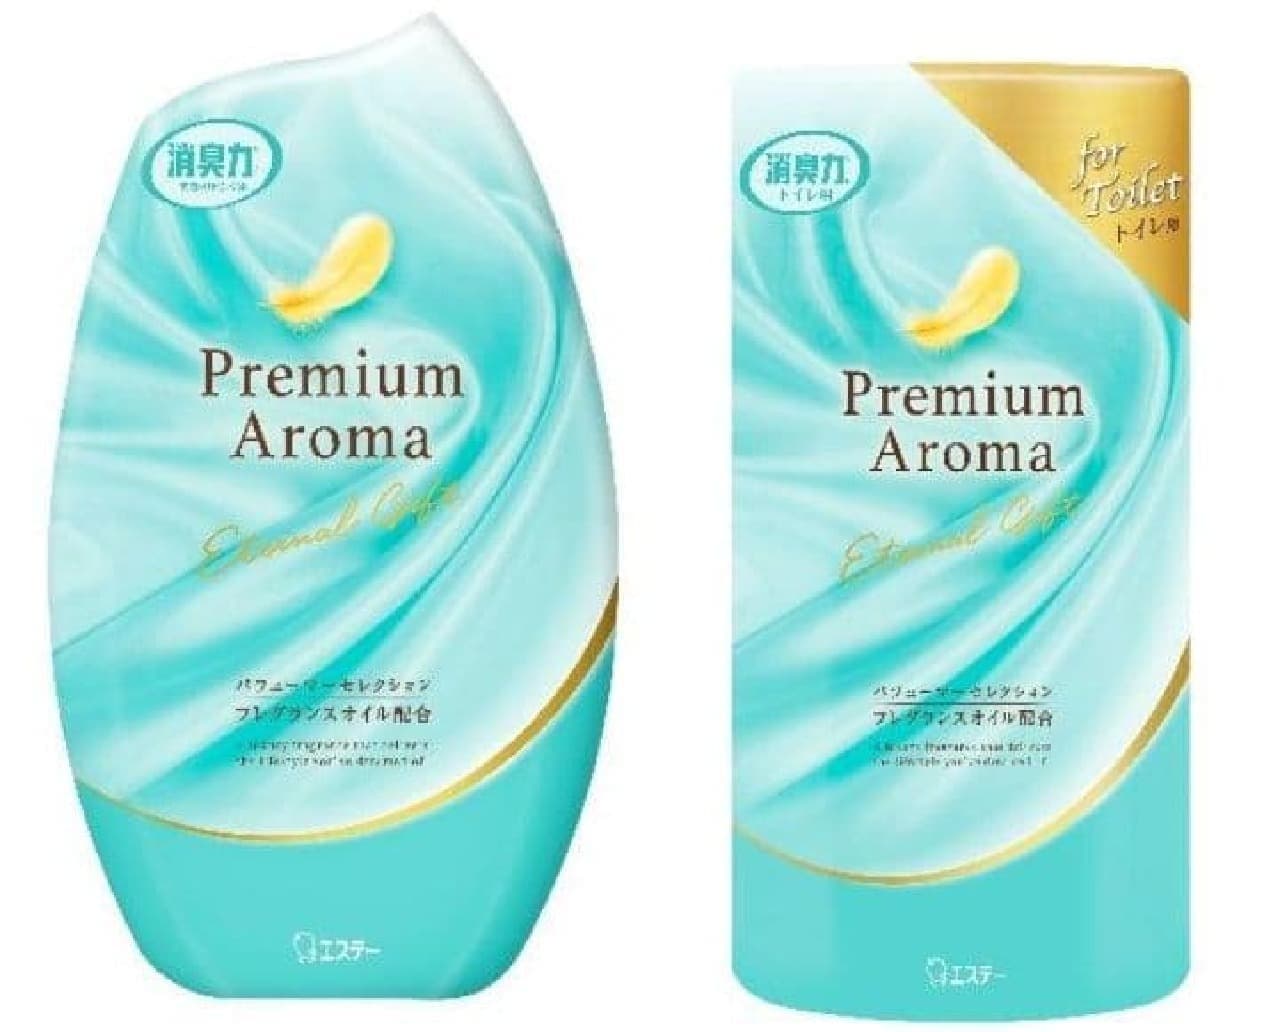 「玄関・リビング用 消臭力 Premium Aroma」「消臭力 トイレ用 Premium Aroma」